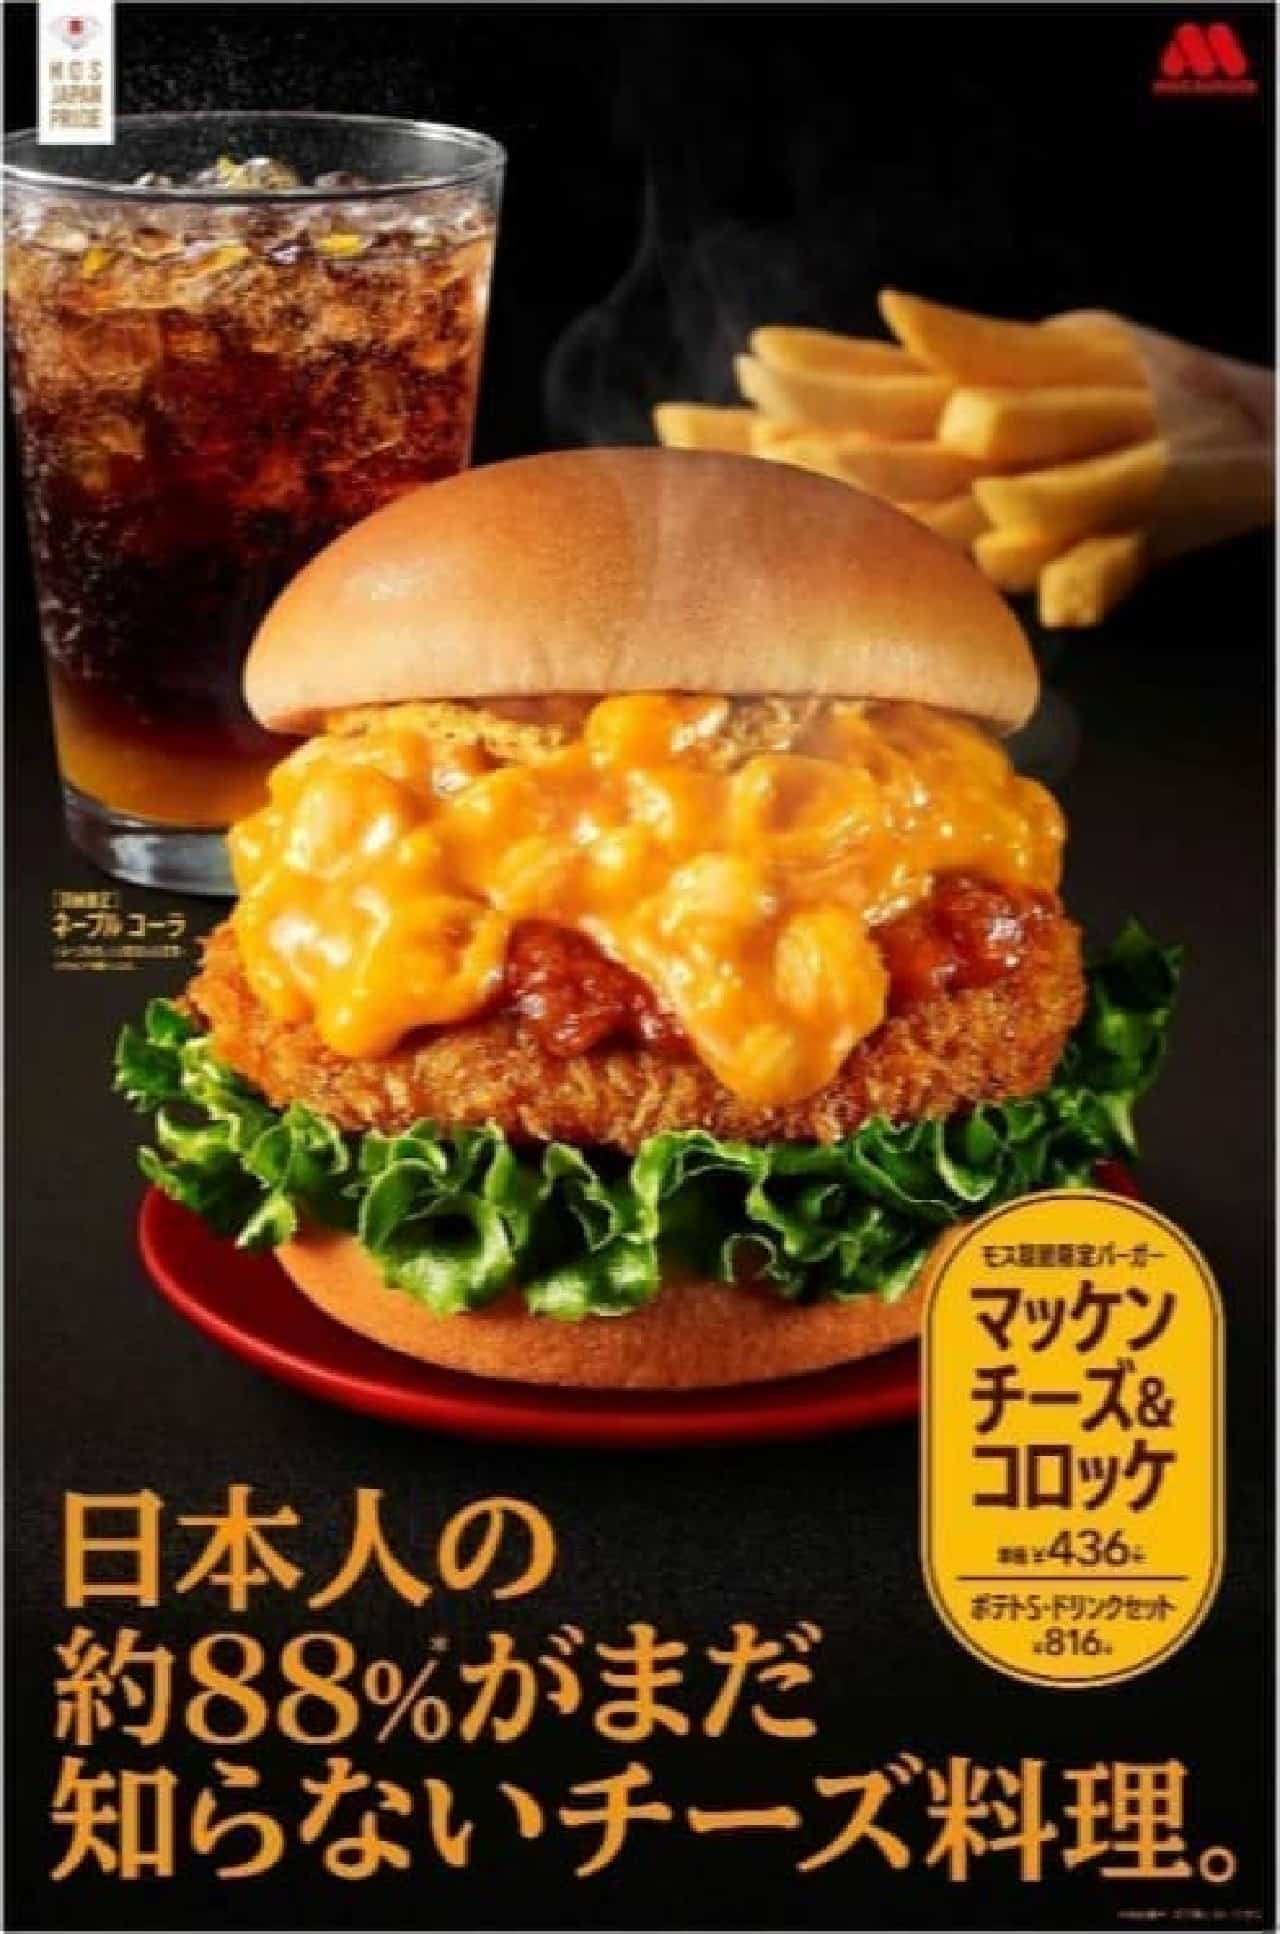 Mos Burger "Macken Cheese & Croquette"